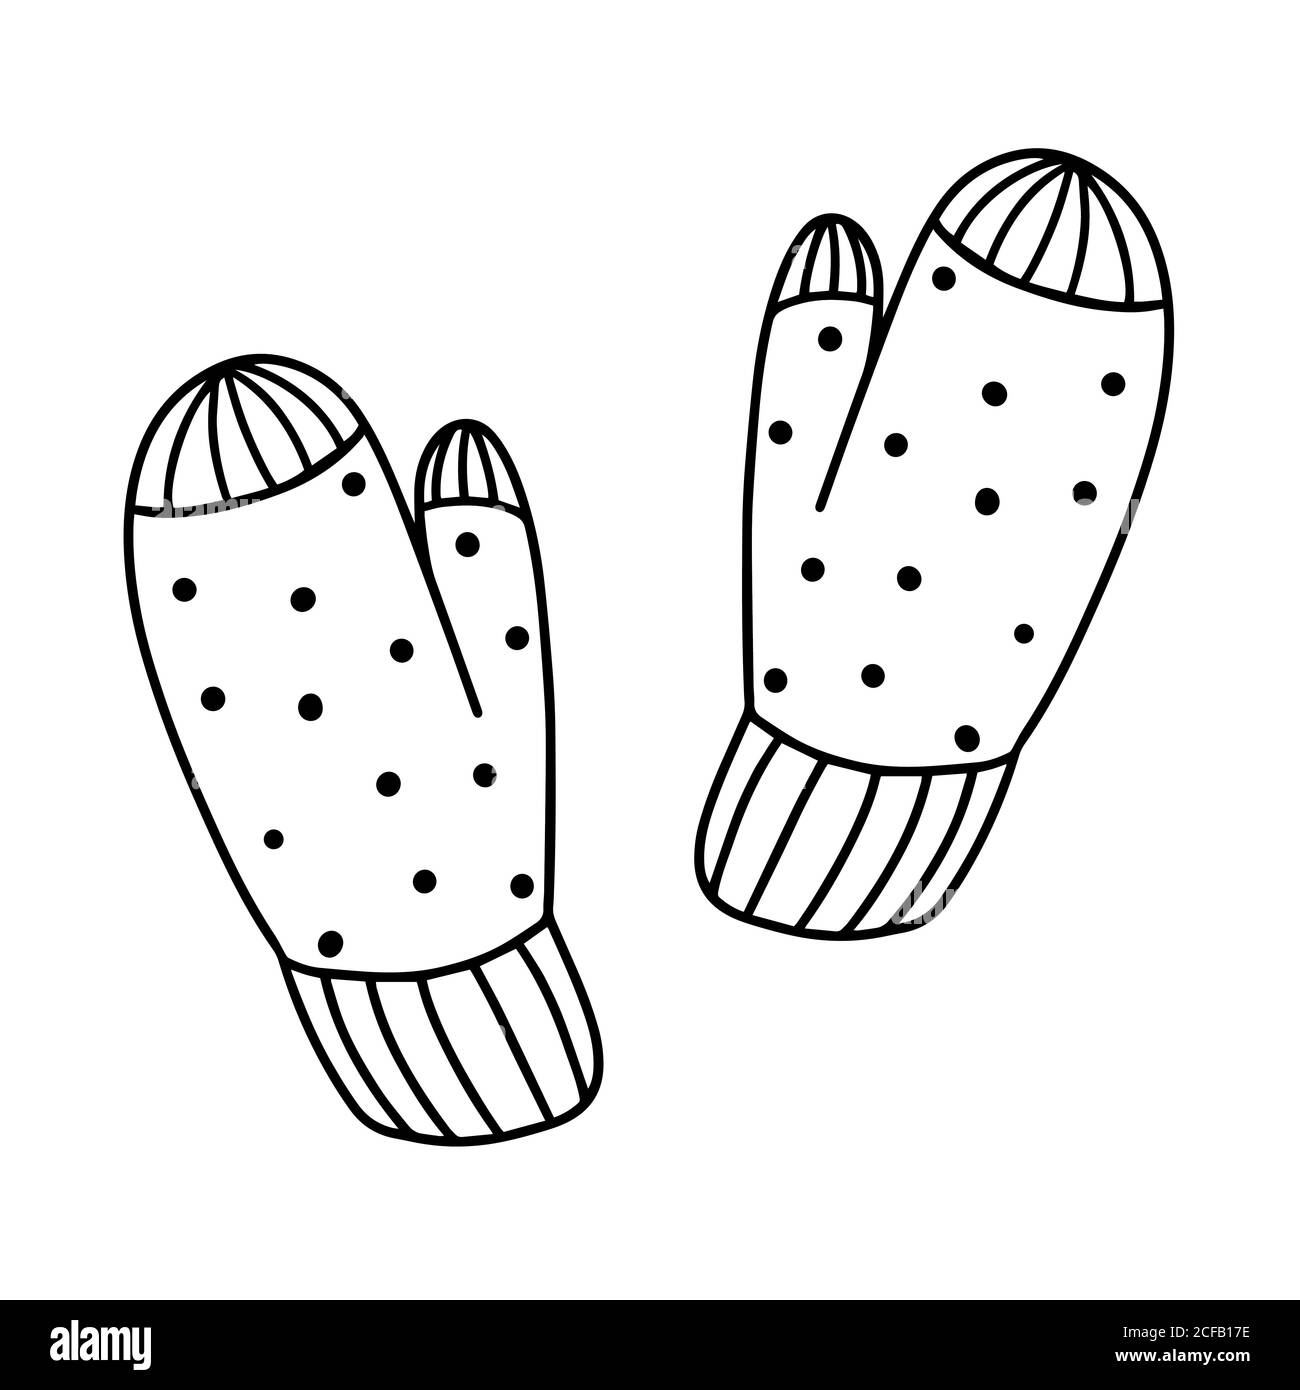 Moufles mignonnes et confortables dans le style de l'illustration Doodle.Vector  Image Vectorielle Stock - Alamy